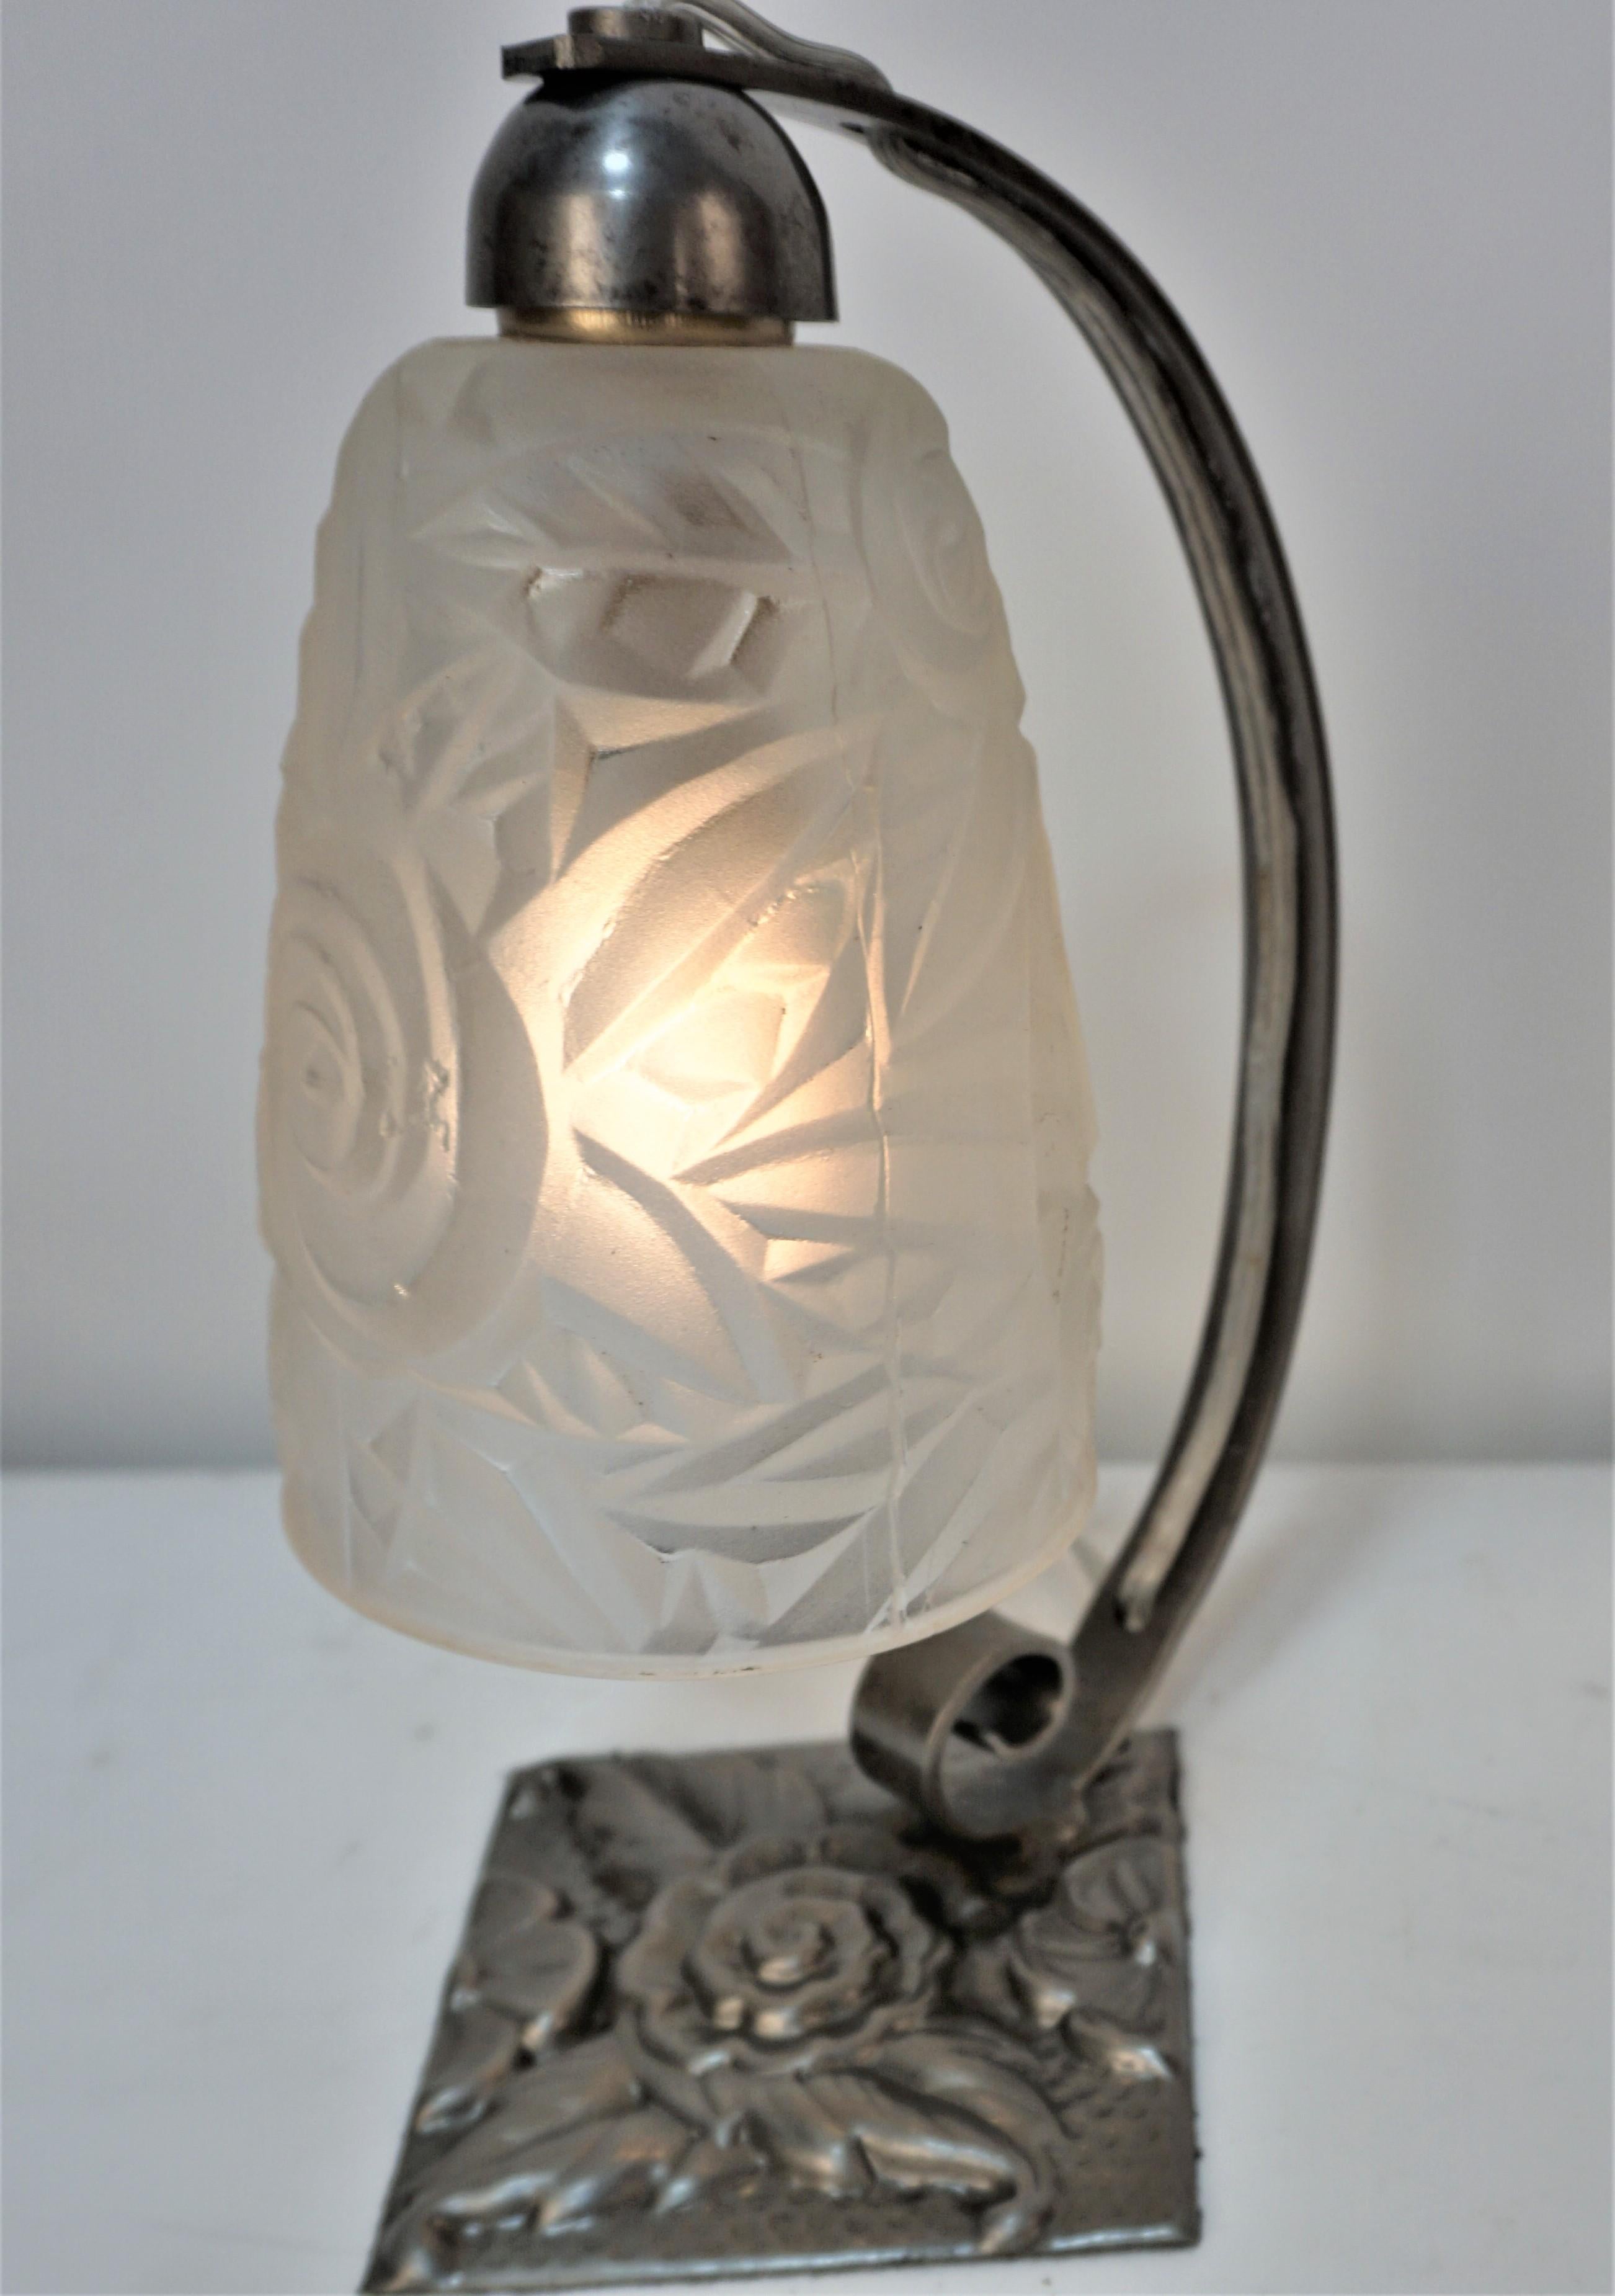  Lampe de table Art Déco en verre givré à taquets des années 1920 par Jean Noverdy (Dijon), France.
La base est en fer fabriqué à la main,
 